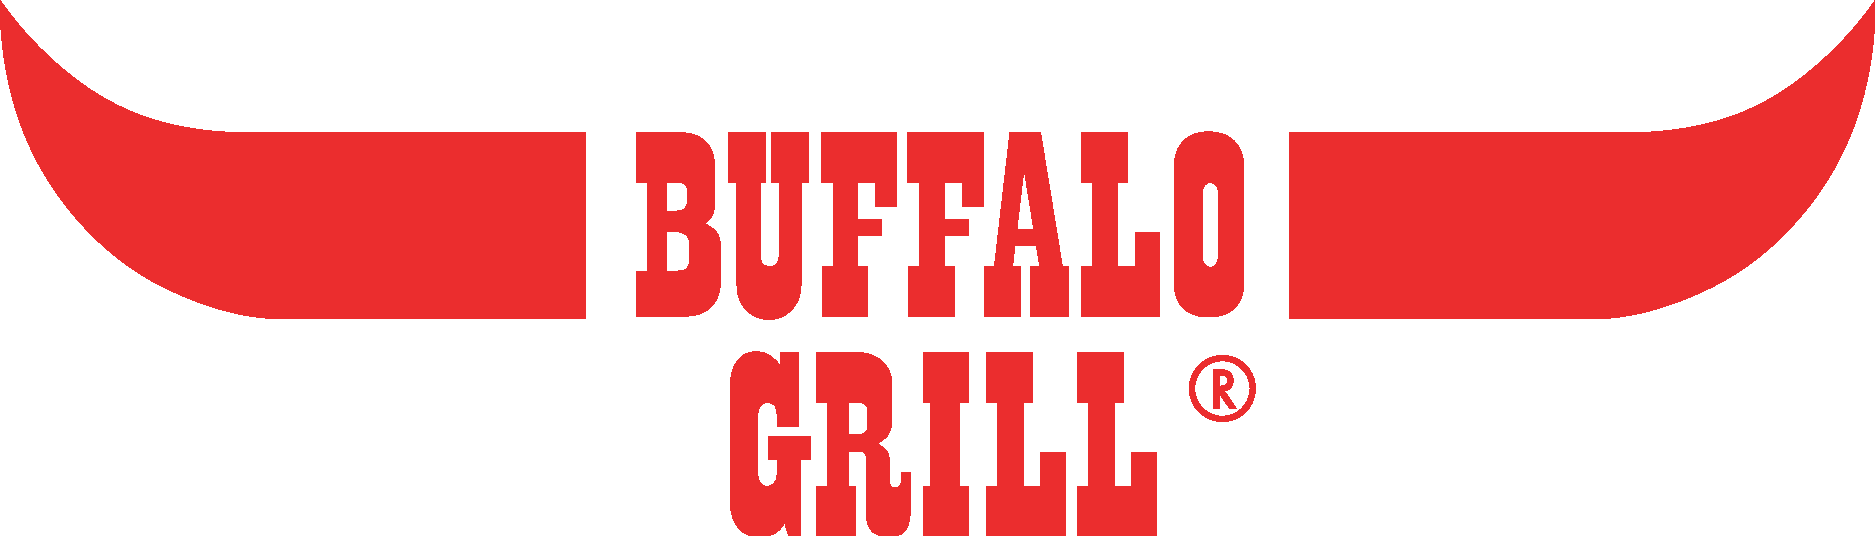 Buffalo Sabres 1999-2006 Logo PNG Vector (AI) Free Download